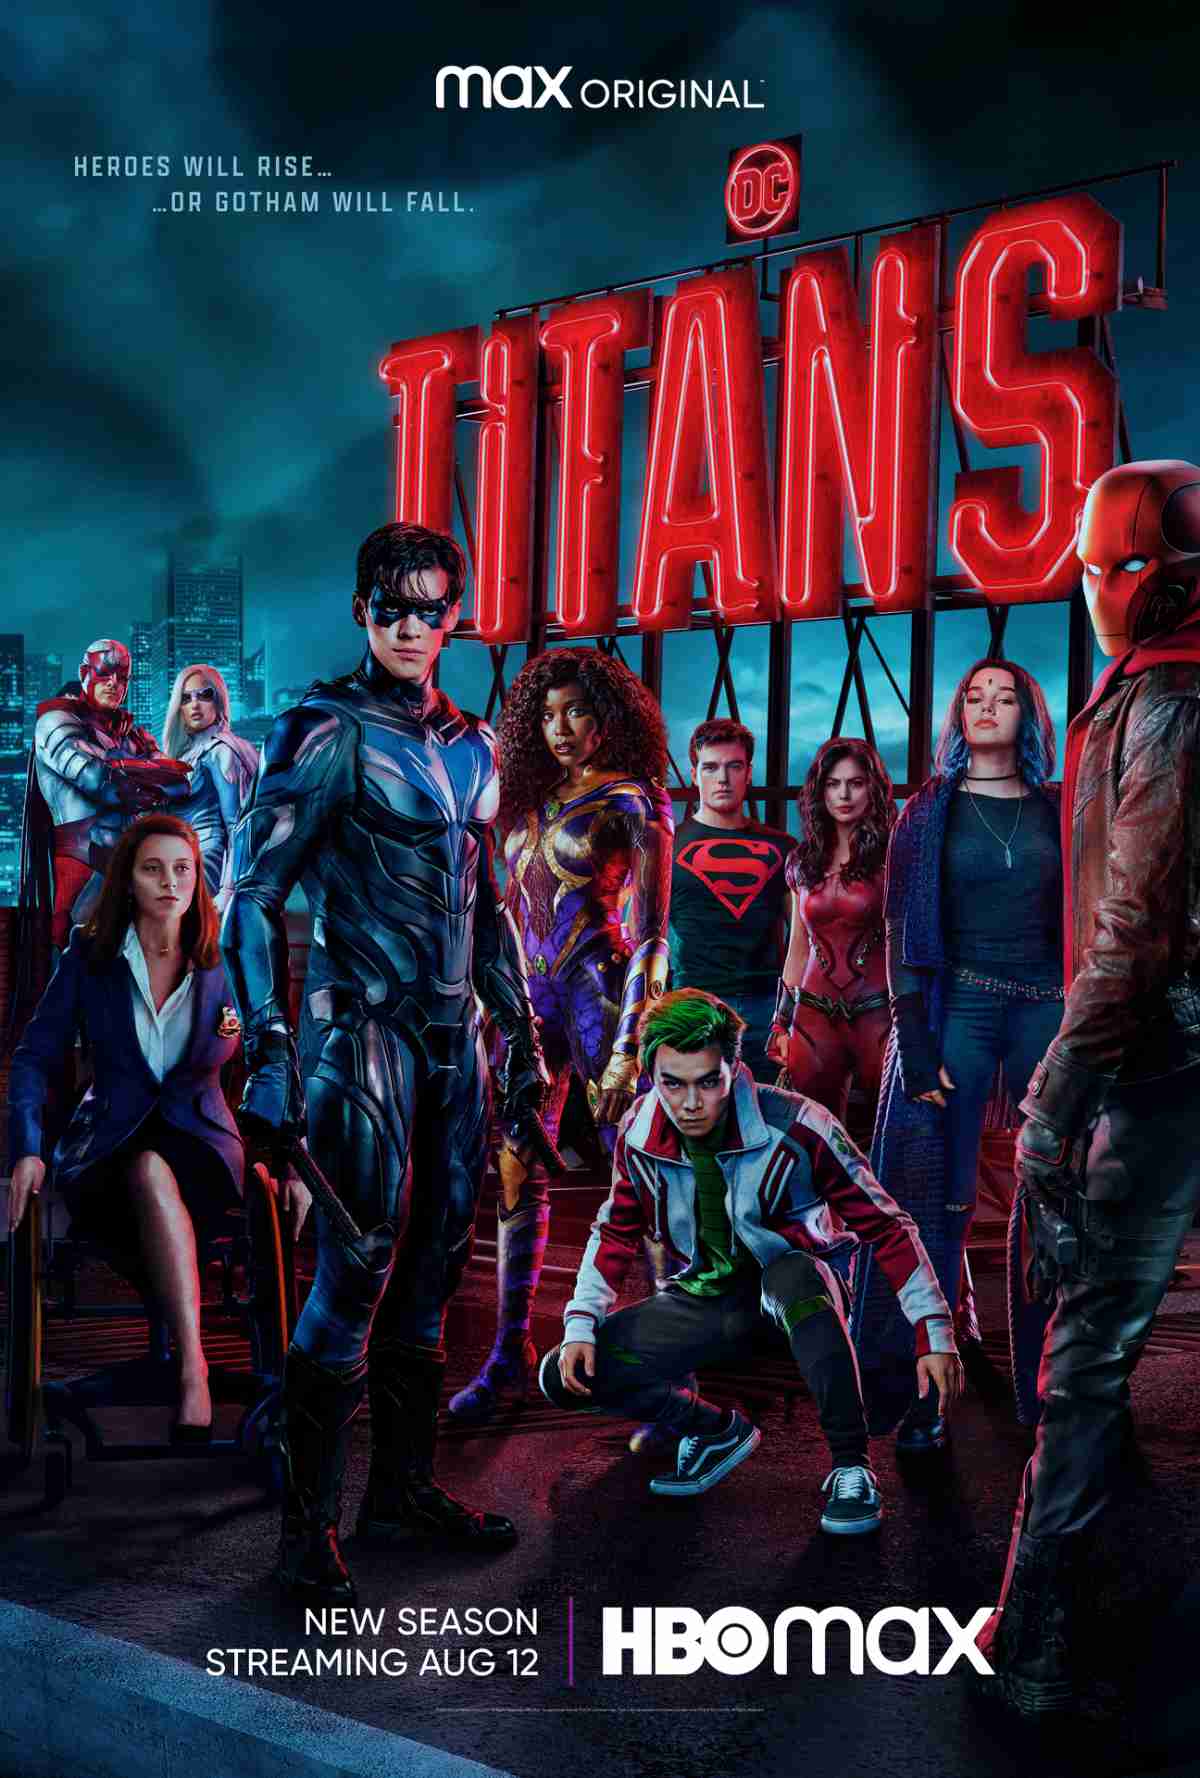 A DC divulgou o trailer da 4ª temporada de Titãs - Portal F5